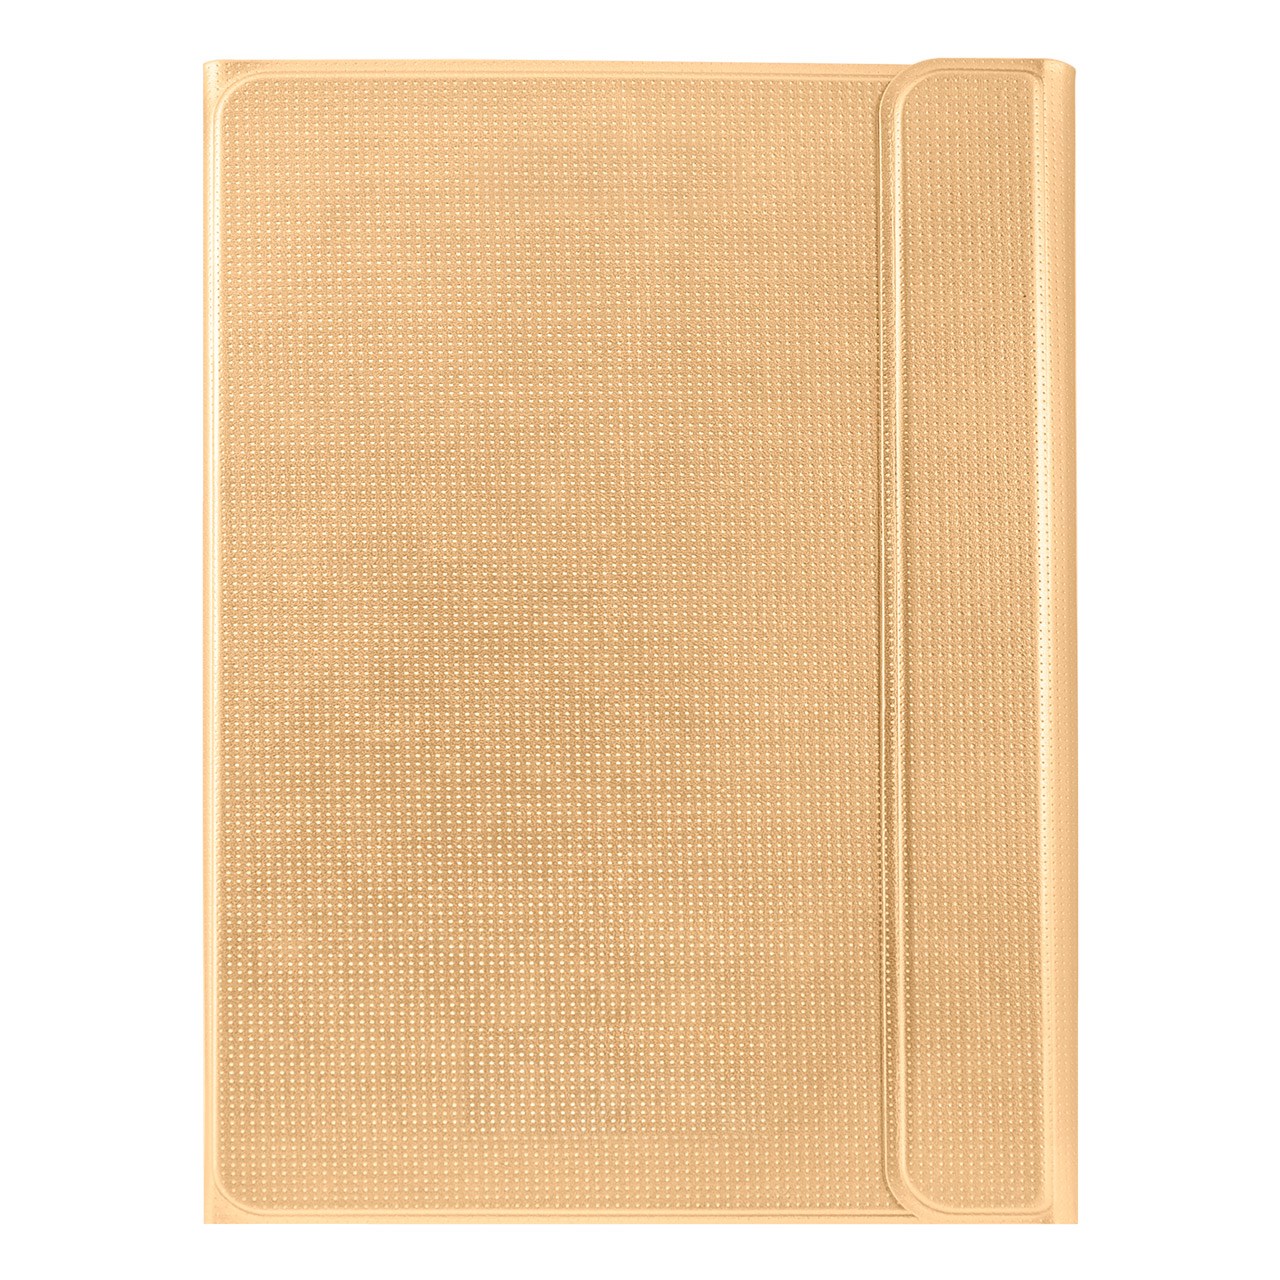 کیف کلاسوری مدل Book Cover مناسب برای تبلت سامسونگ گلکسی Tab S 10.5